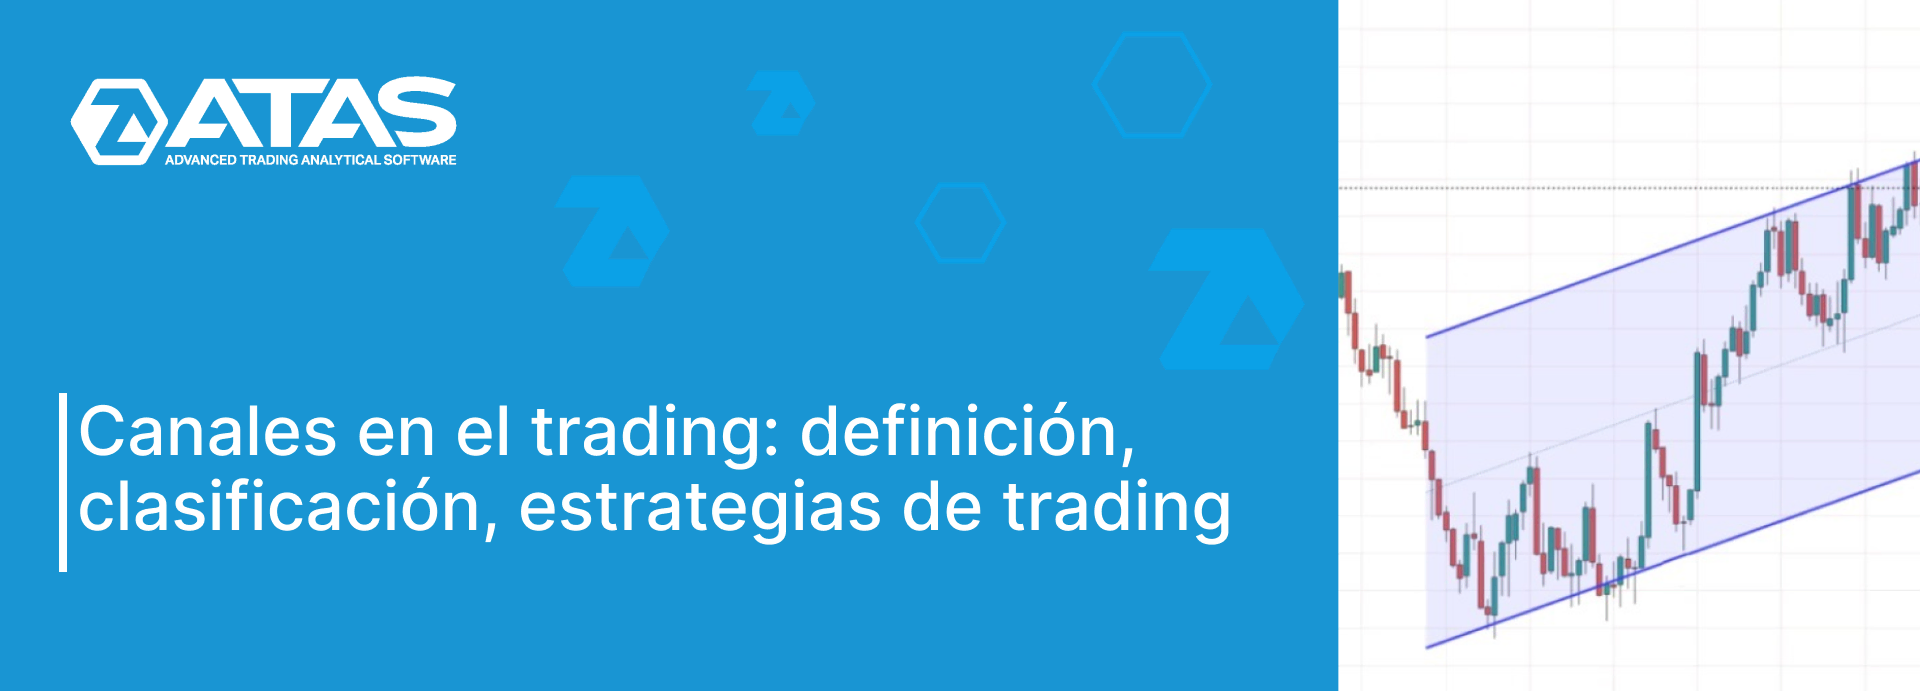 Canales en el trading definición, clasificación, estrategias de trading